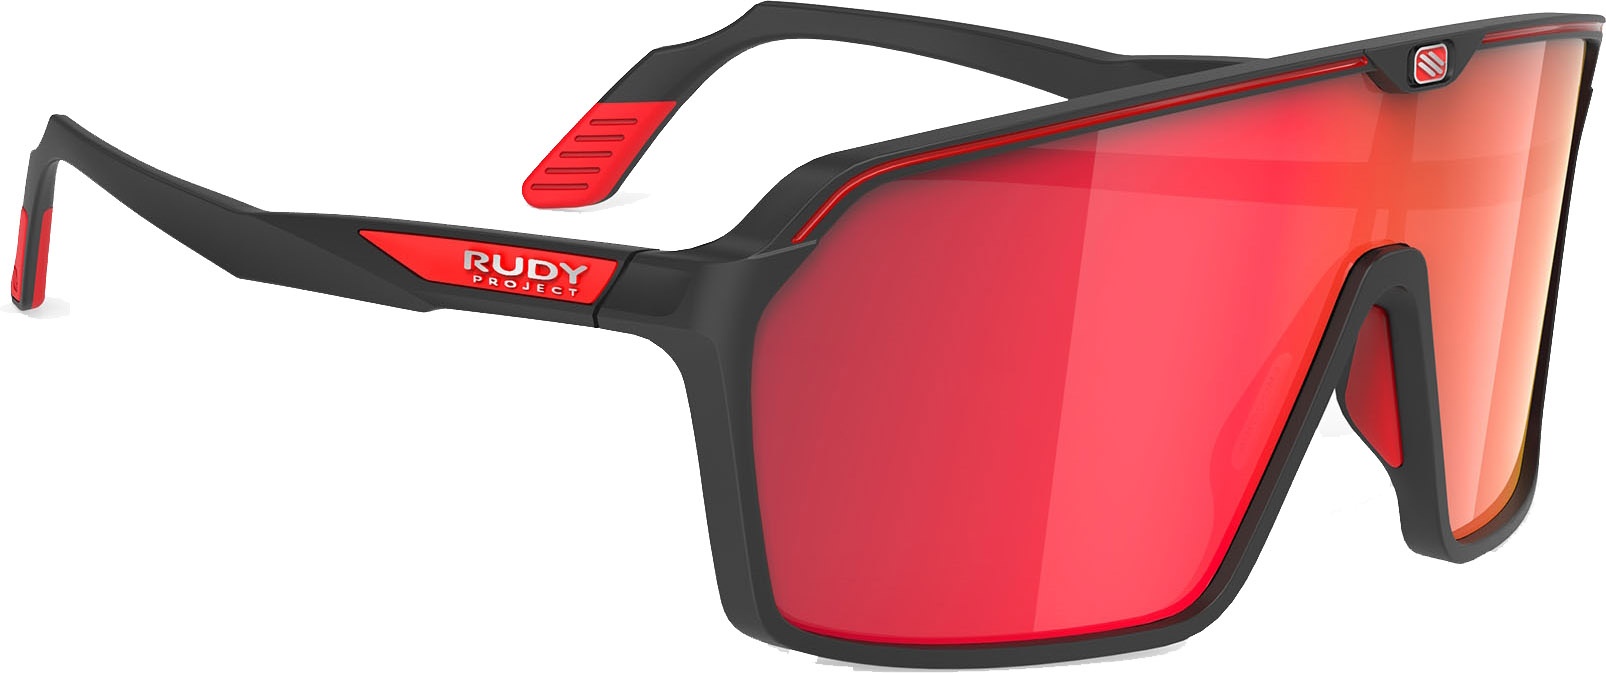  - Rudy Project Spinshield Solbriller - Multilaser Red - Sort